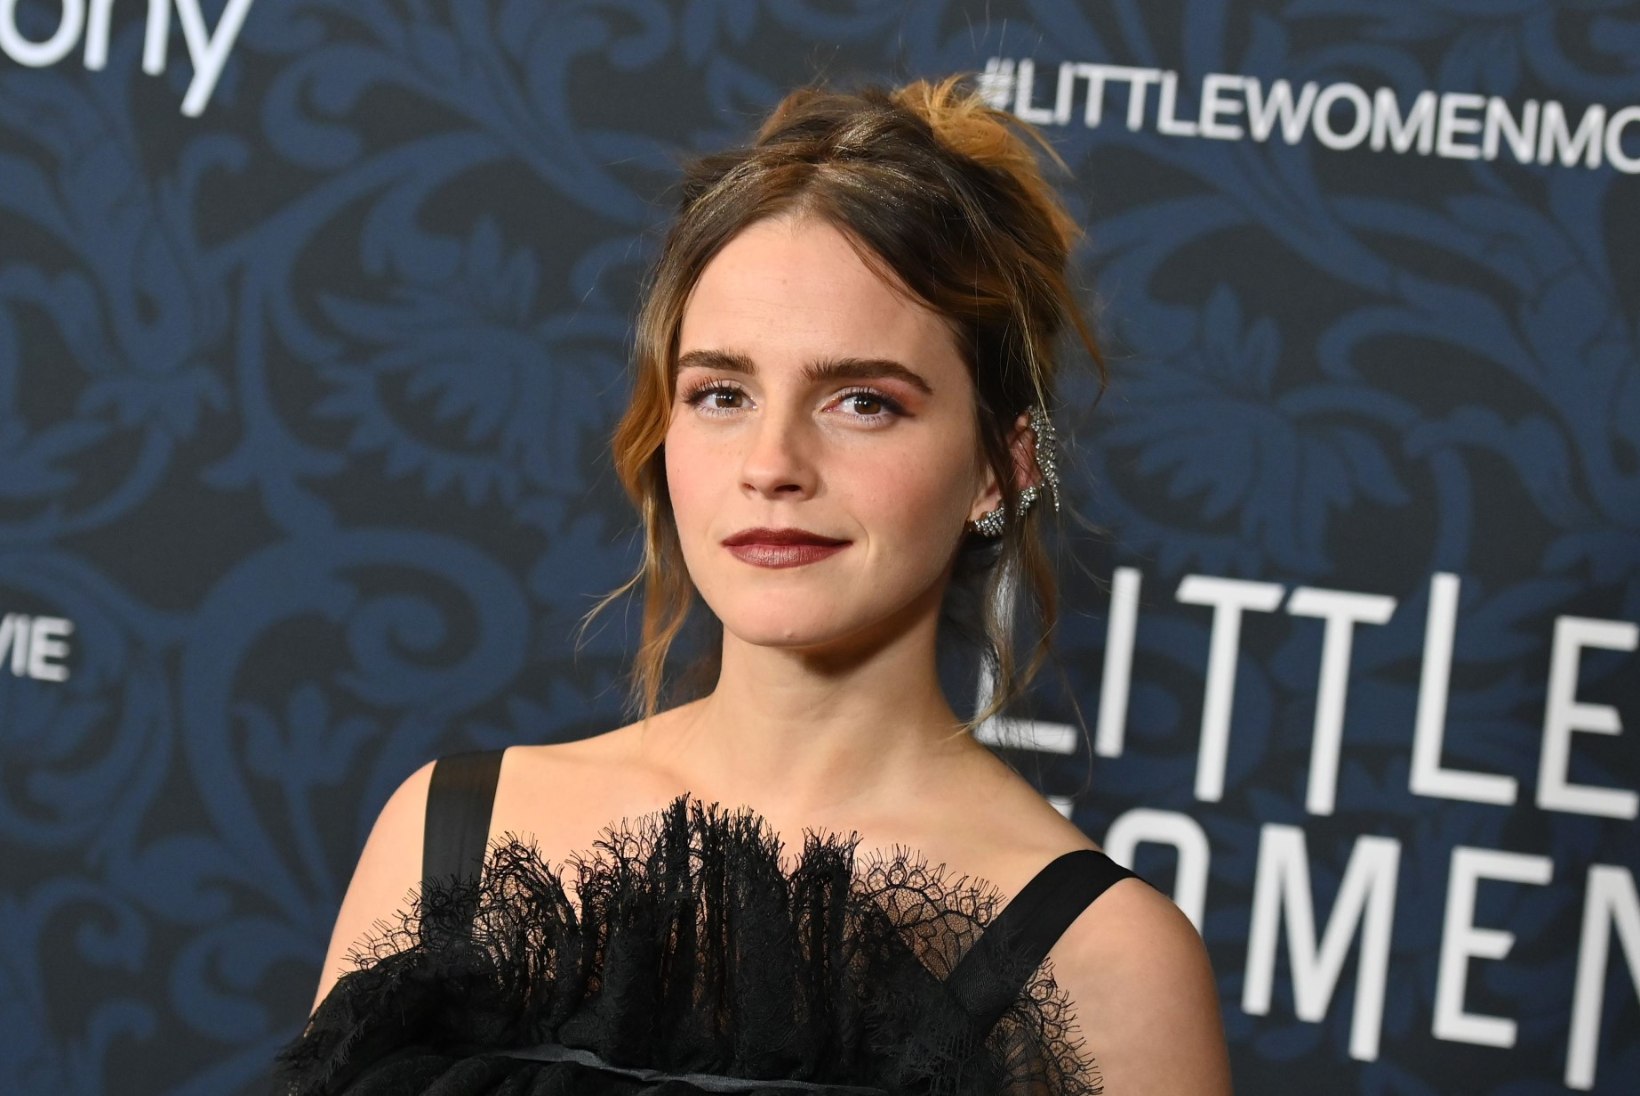 30aastaseks saanud Emma Watson avaldas armsa lapsepõlvepildi